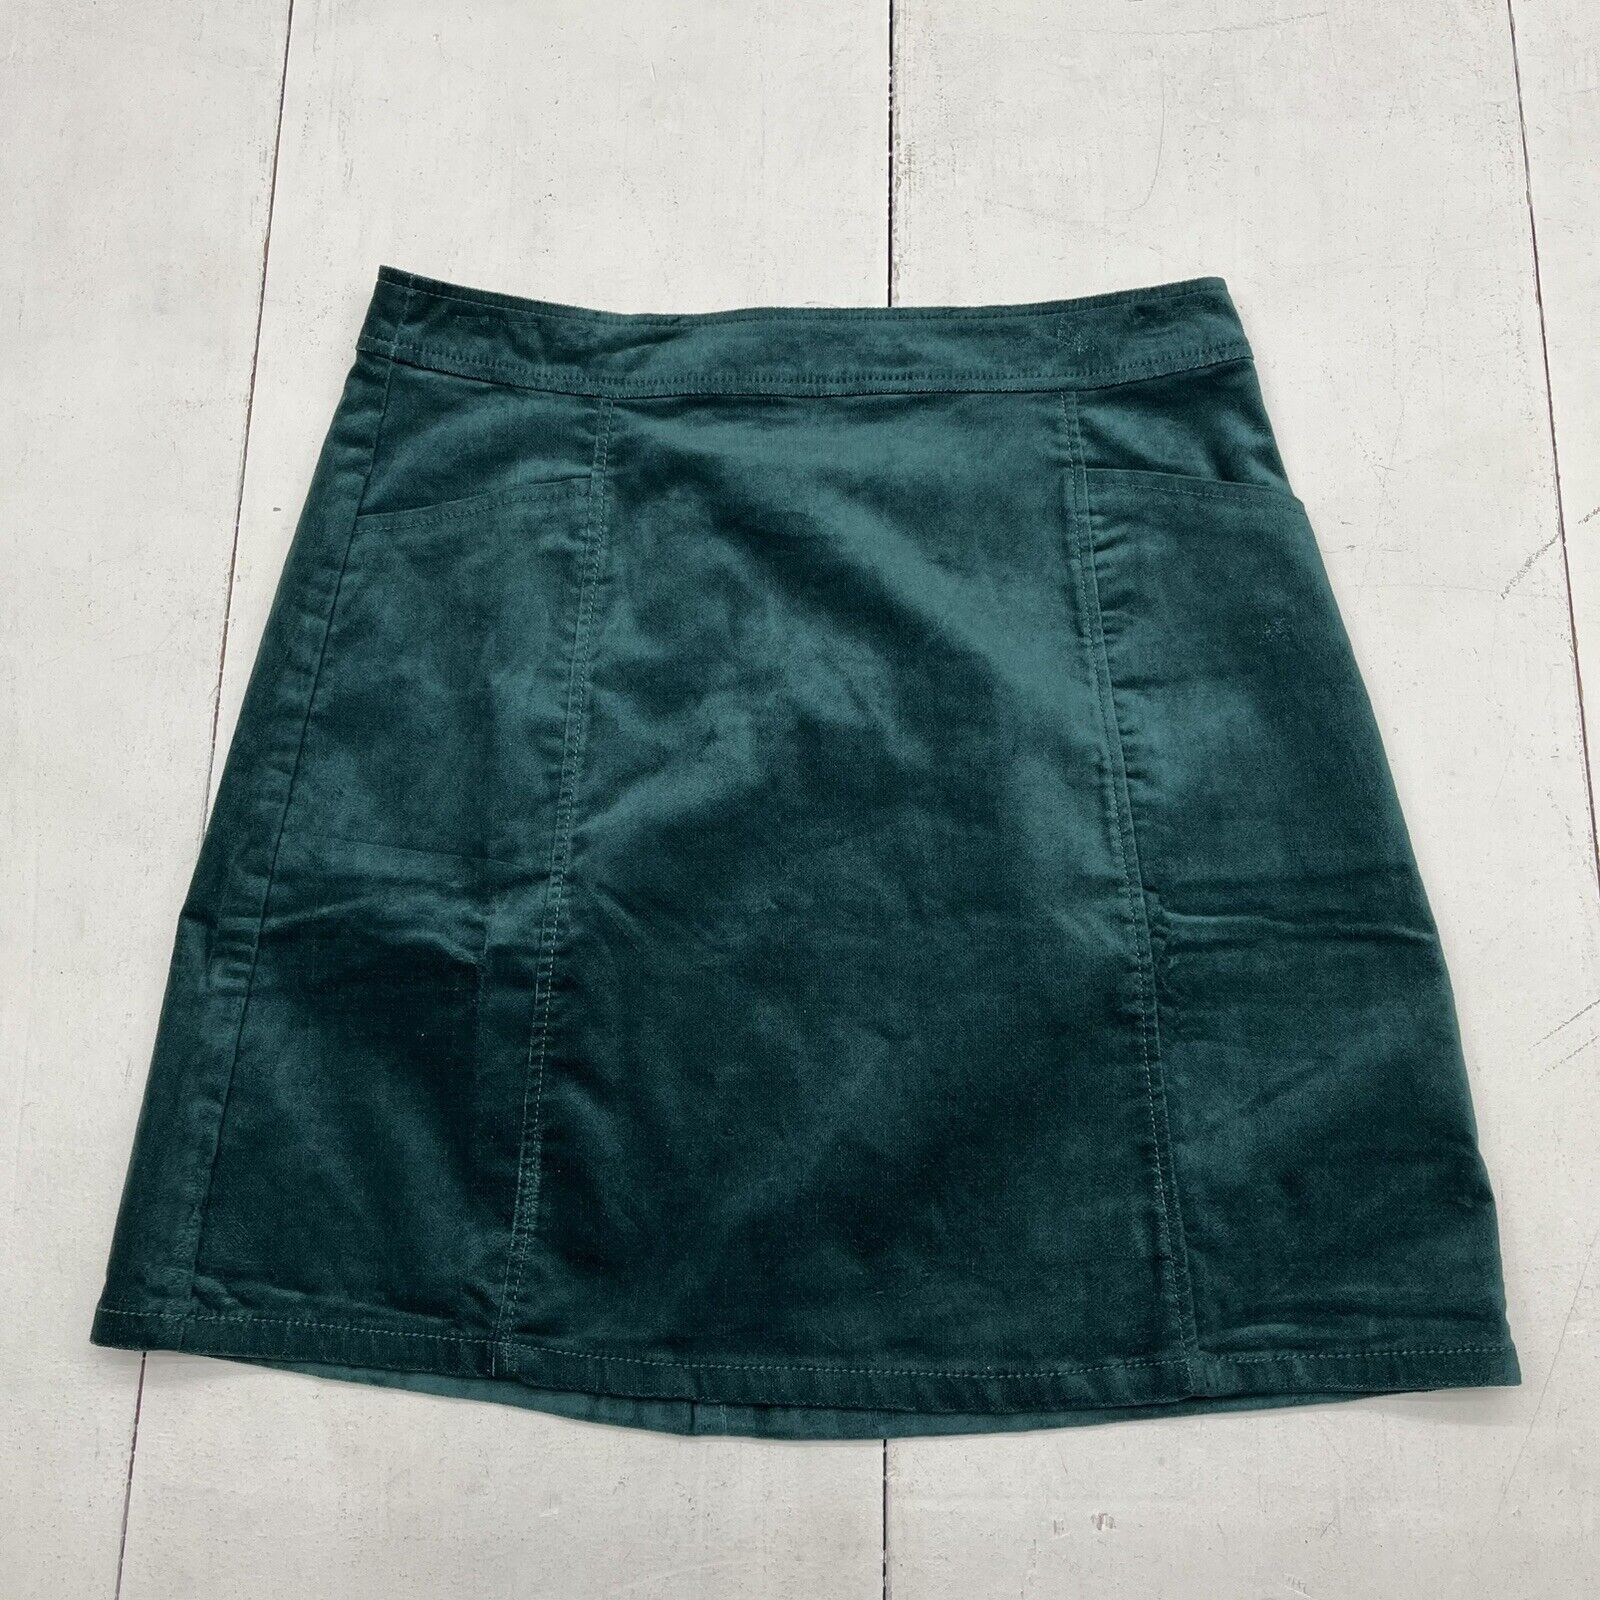 Loft Emerald Green Velvet Skirt With Pockets Women’s Size 4 NEW